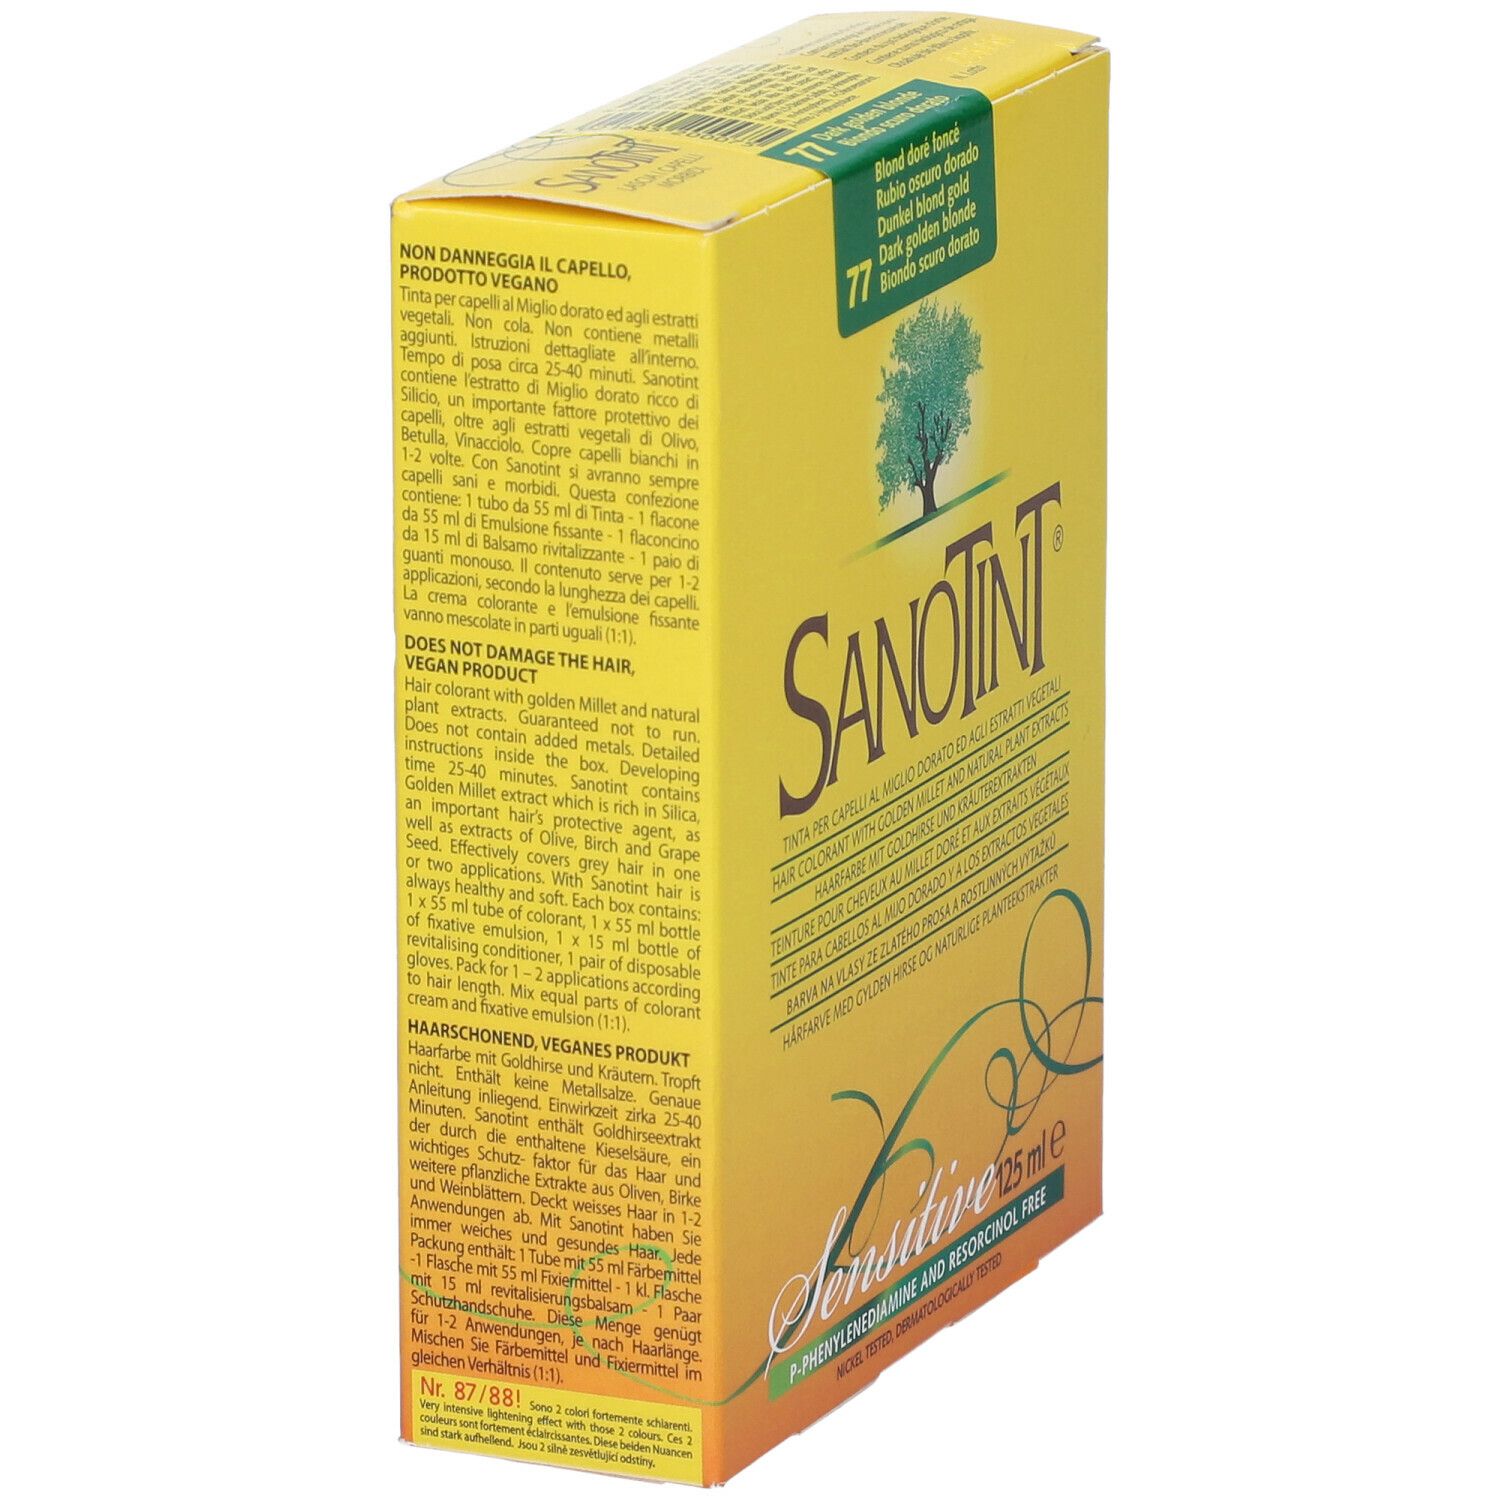 Sanotint Light Bion Scu Dor 77